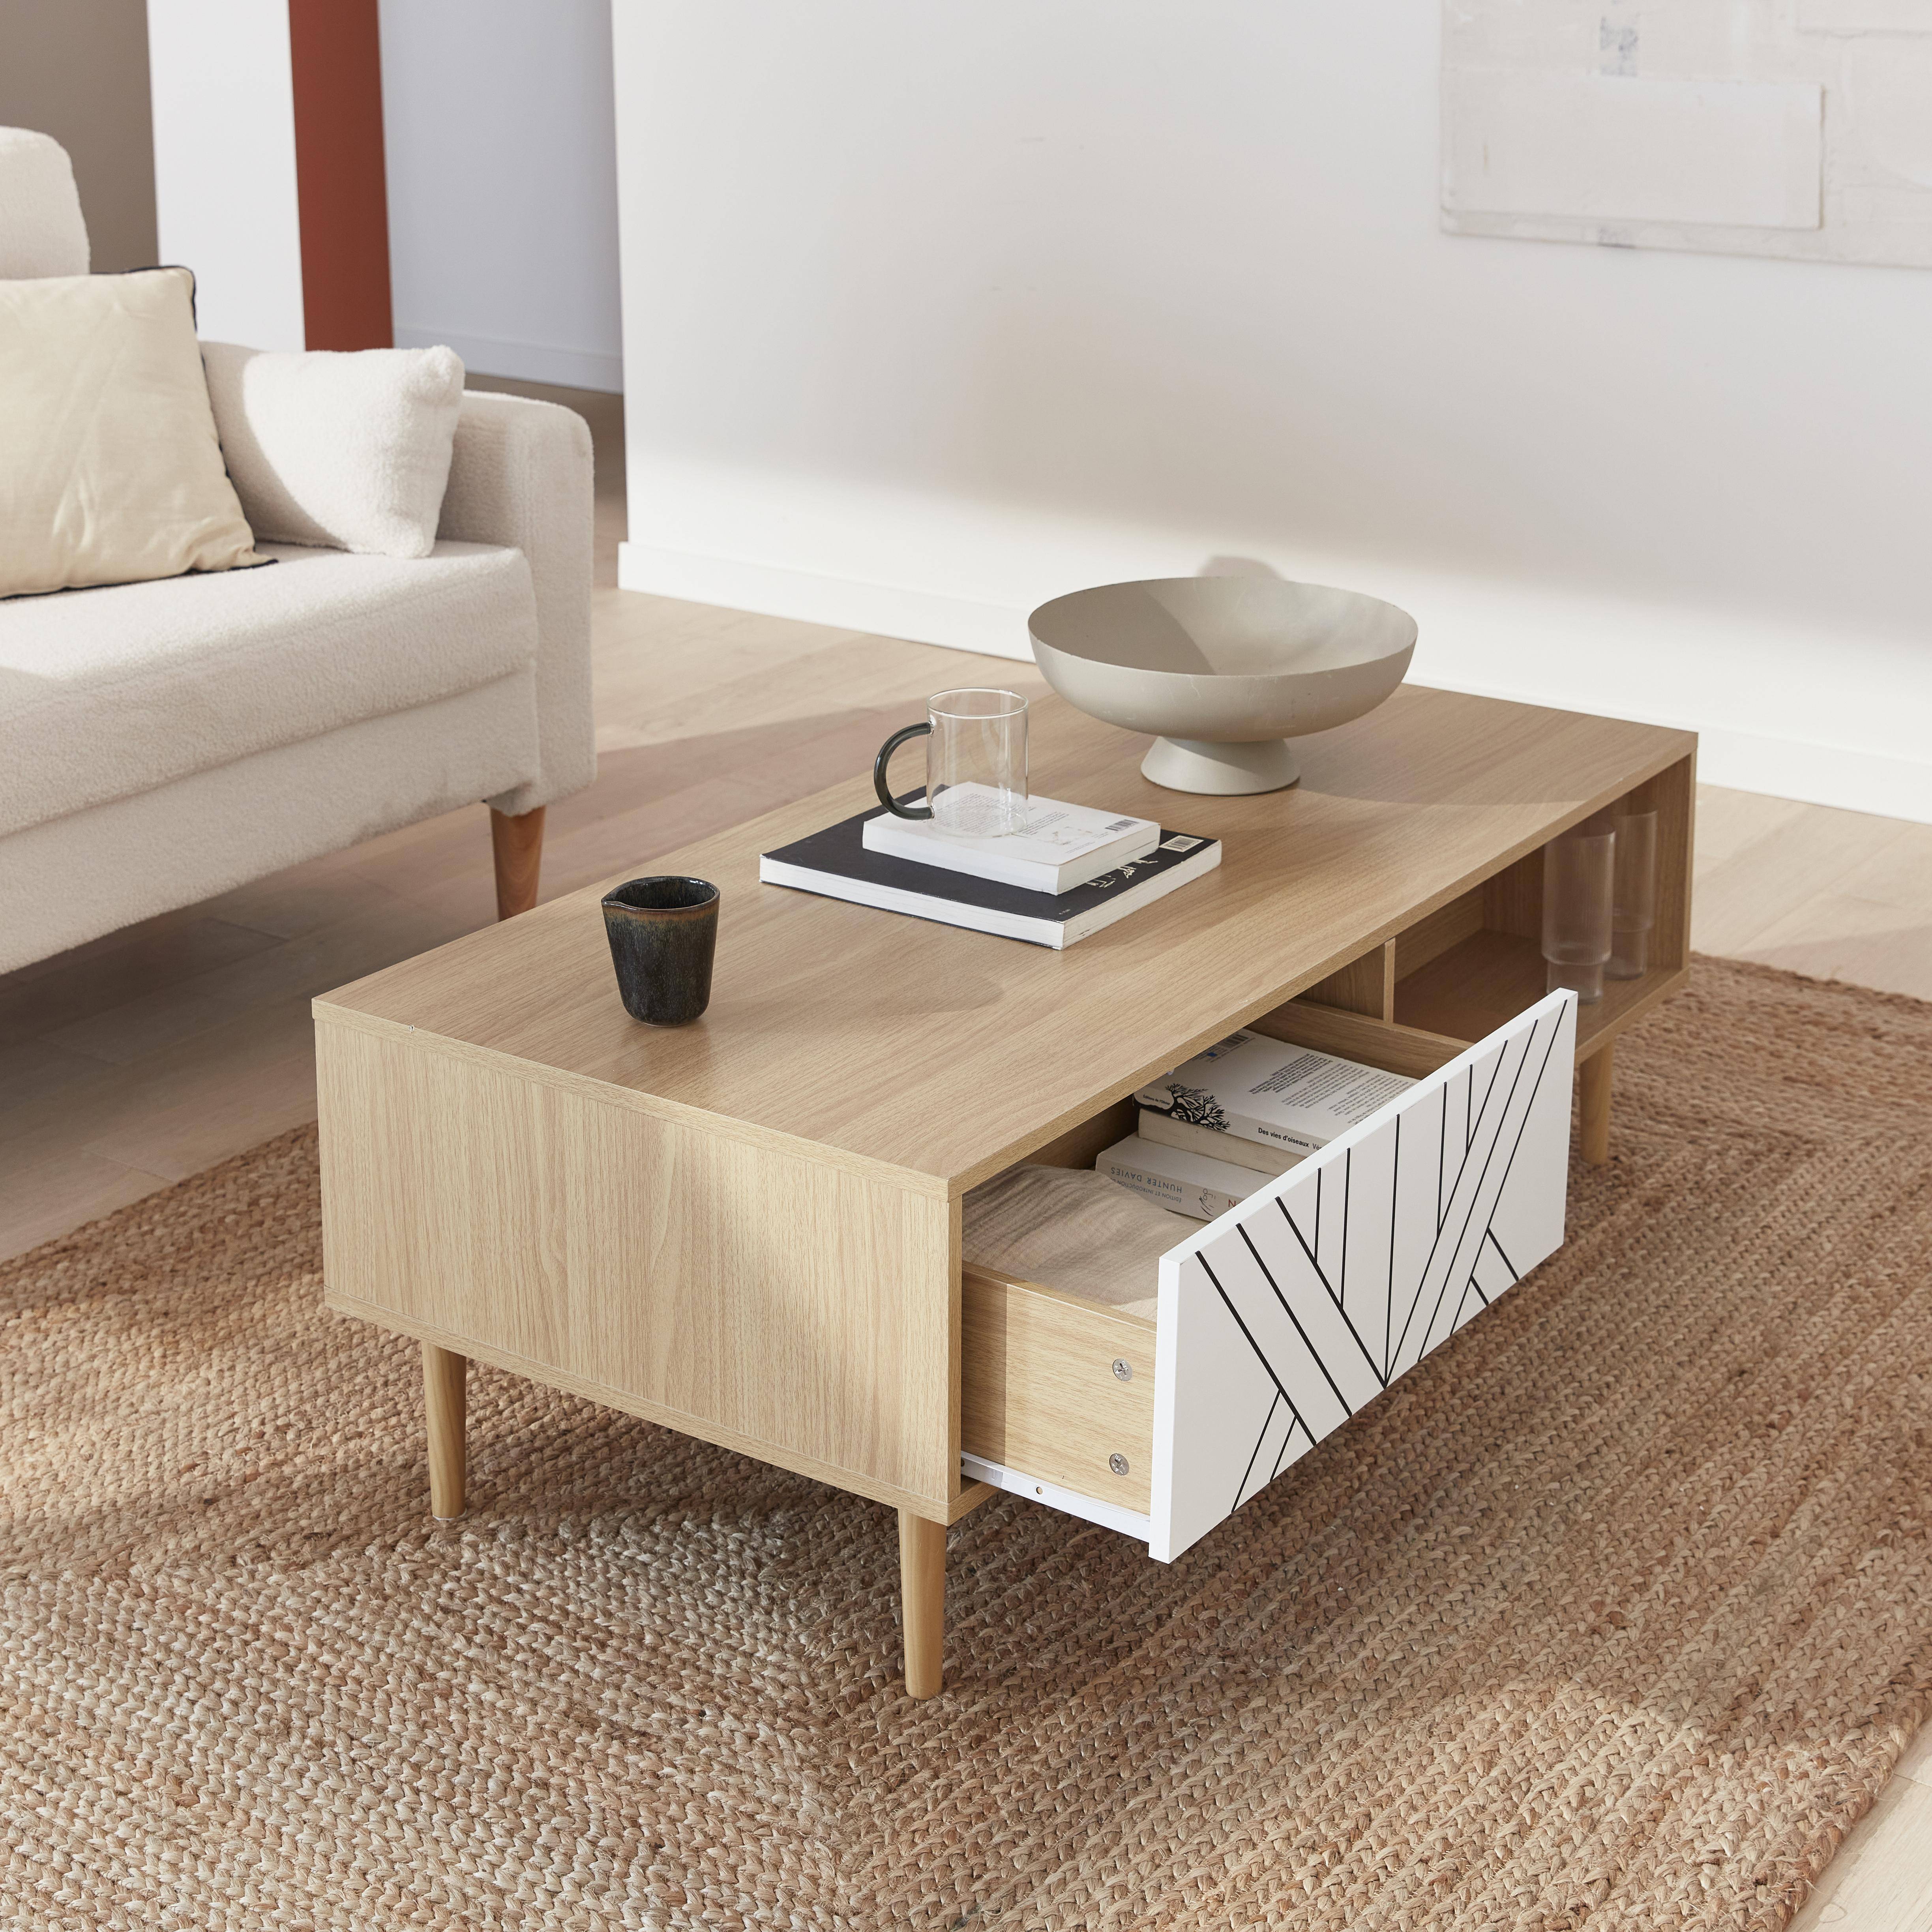 Wood-effect coffee table, 120x55x40cm, Mika, White,sweeek,Photo2